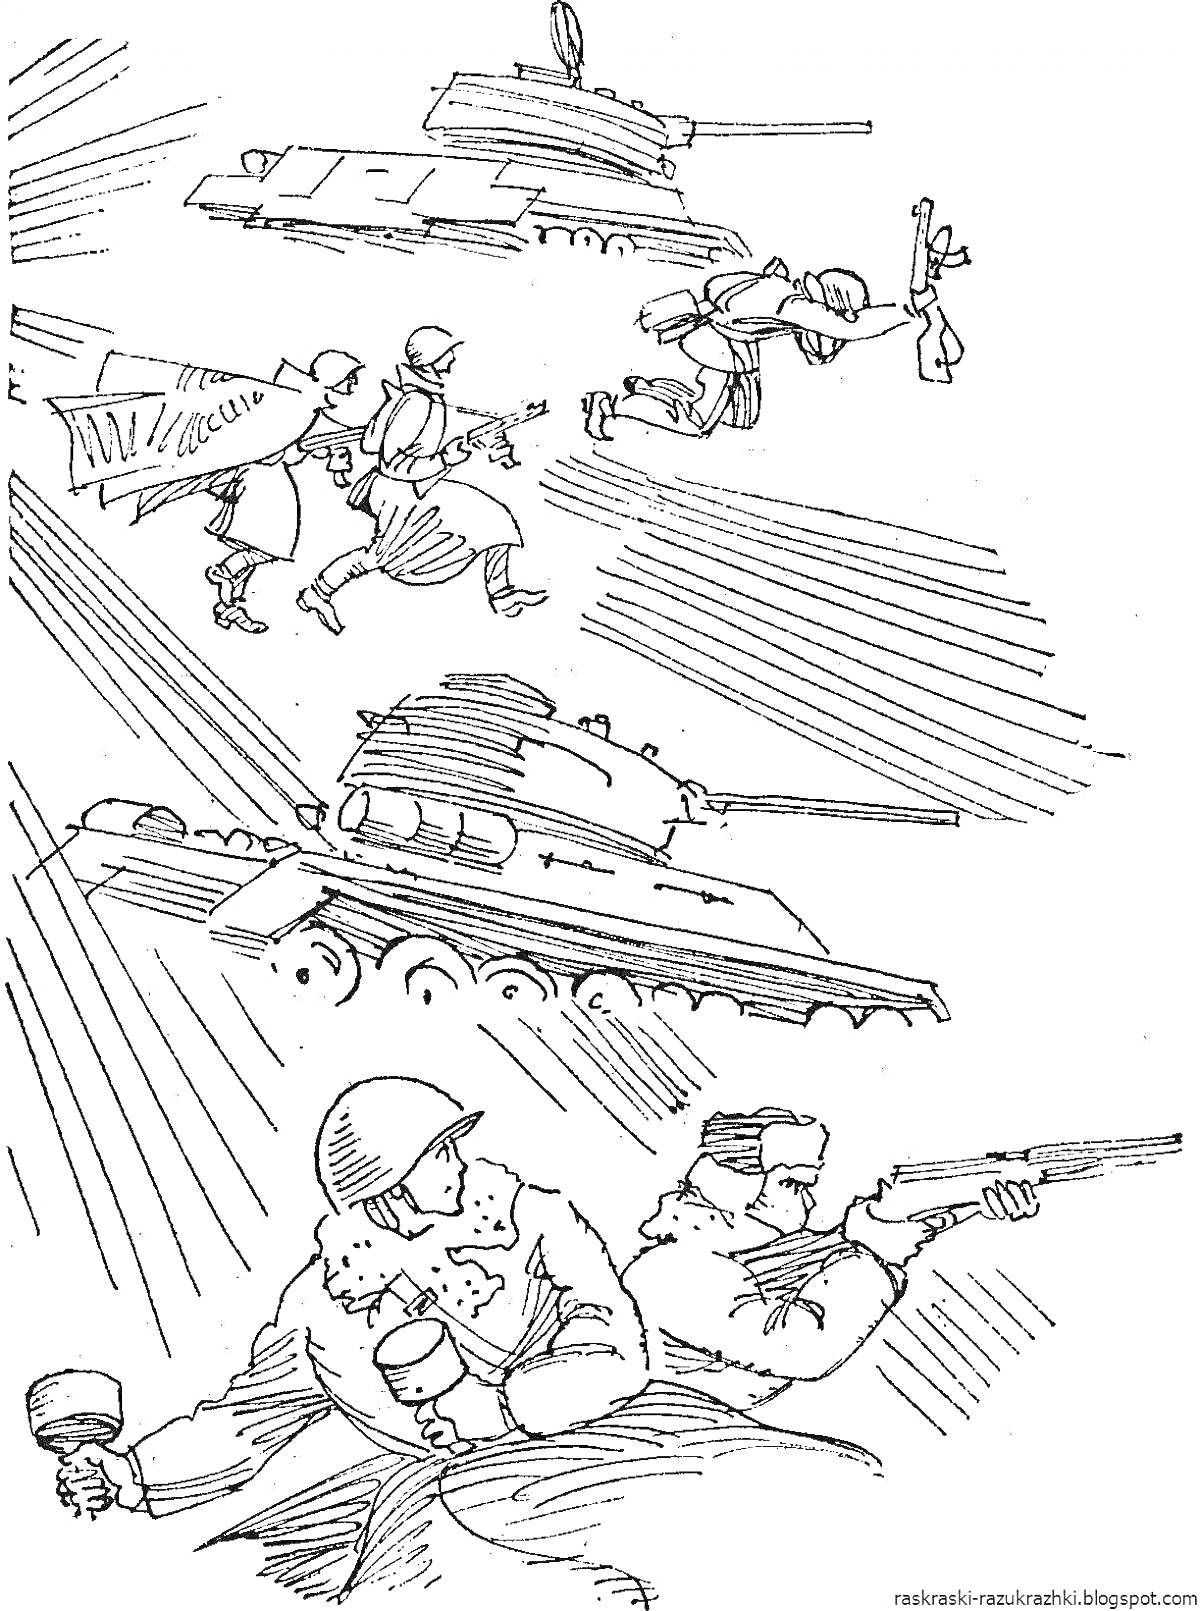 Атака нацистских позиций: танки, солдаты с винтовками и гранатами